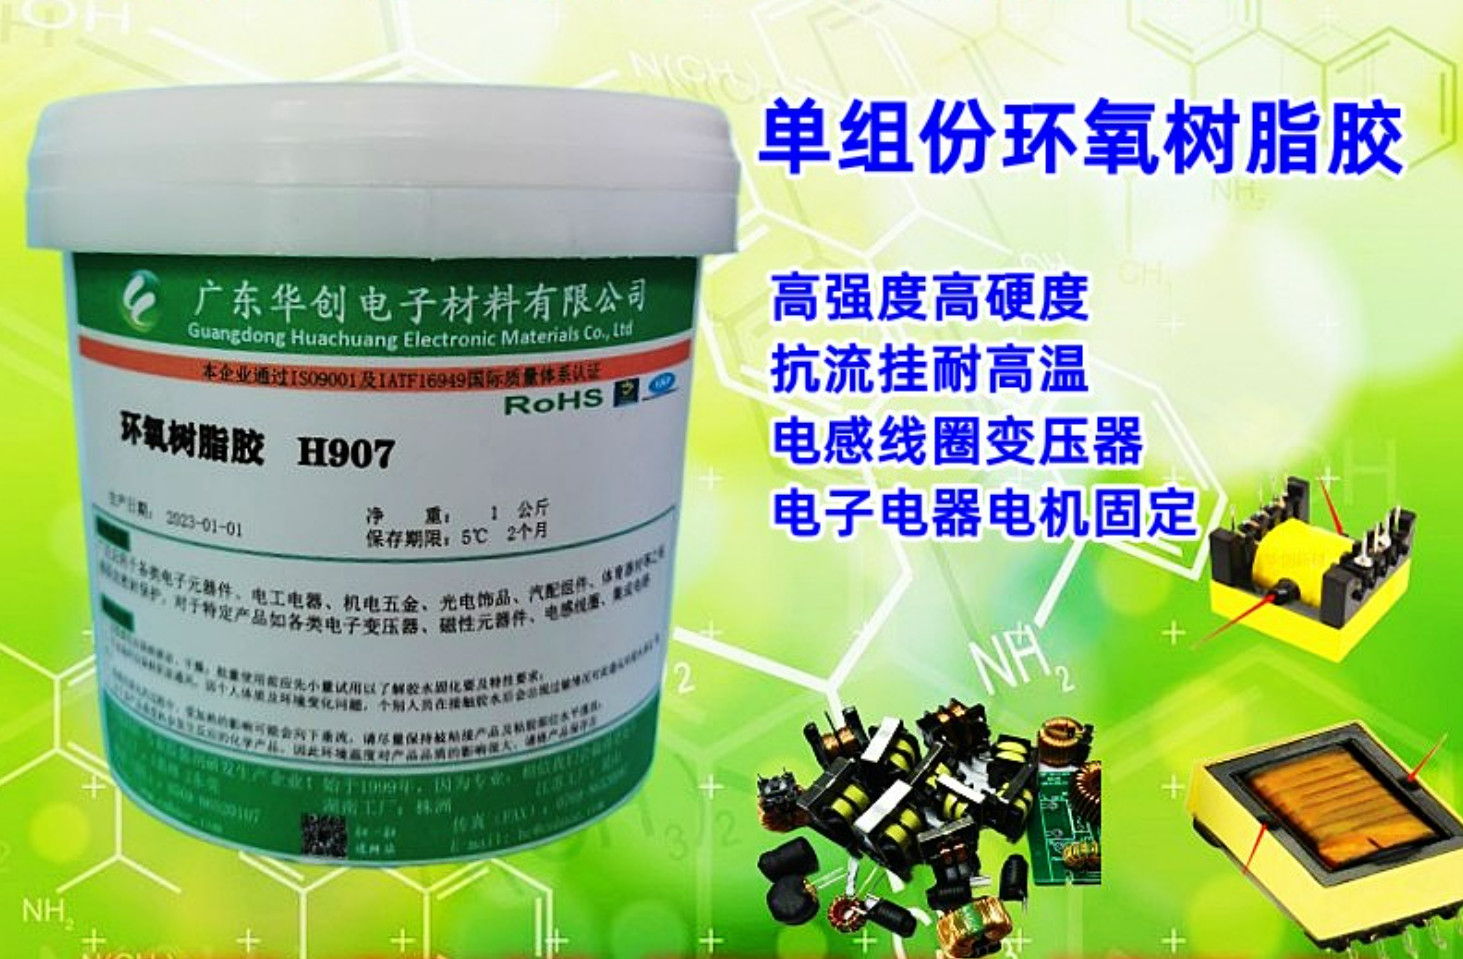 H907-HF 磁芯胶 无卤环氧树脂胶 单组份胶水 电机胶 电子粘接胶 胶黏剂